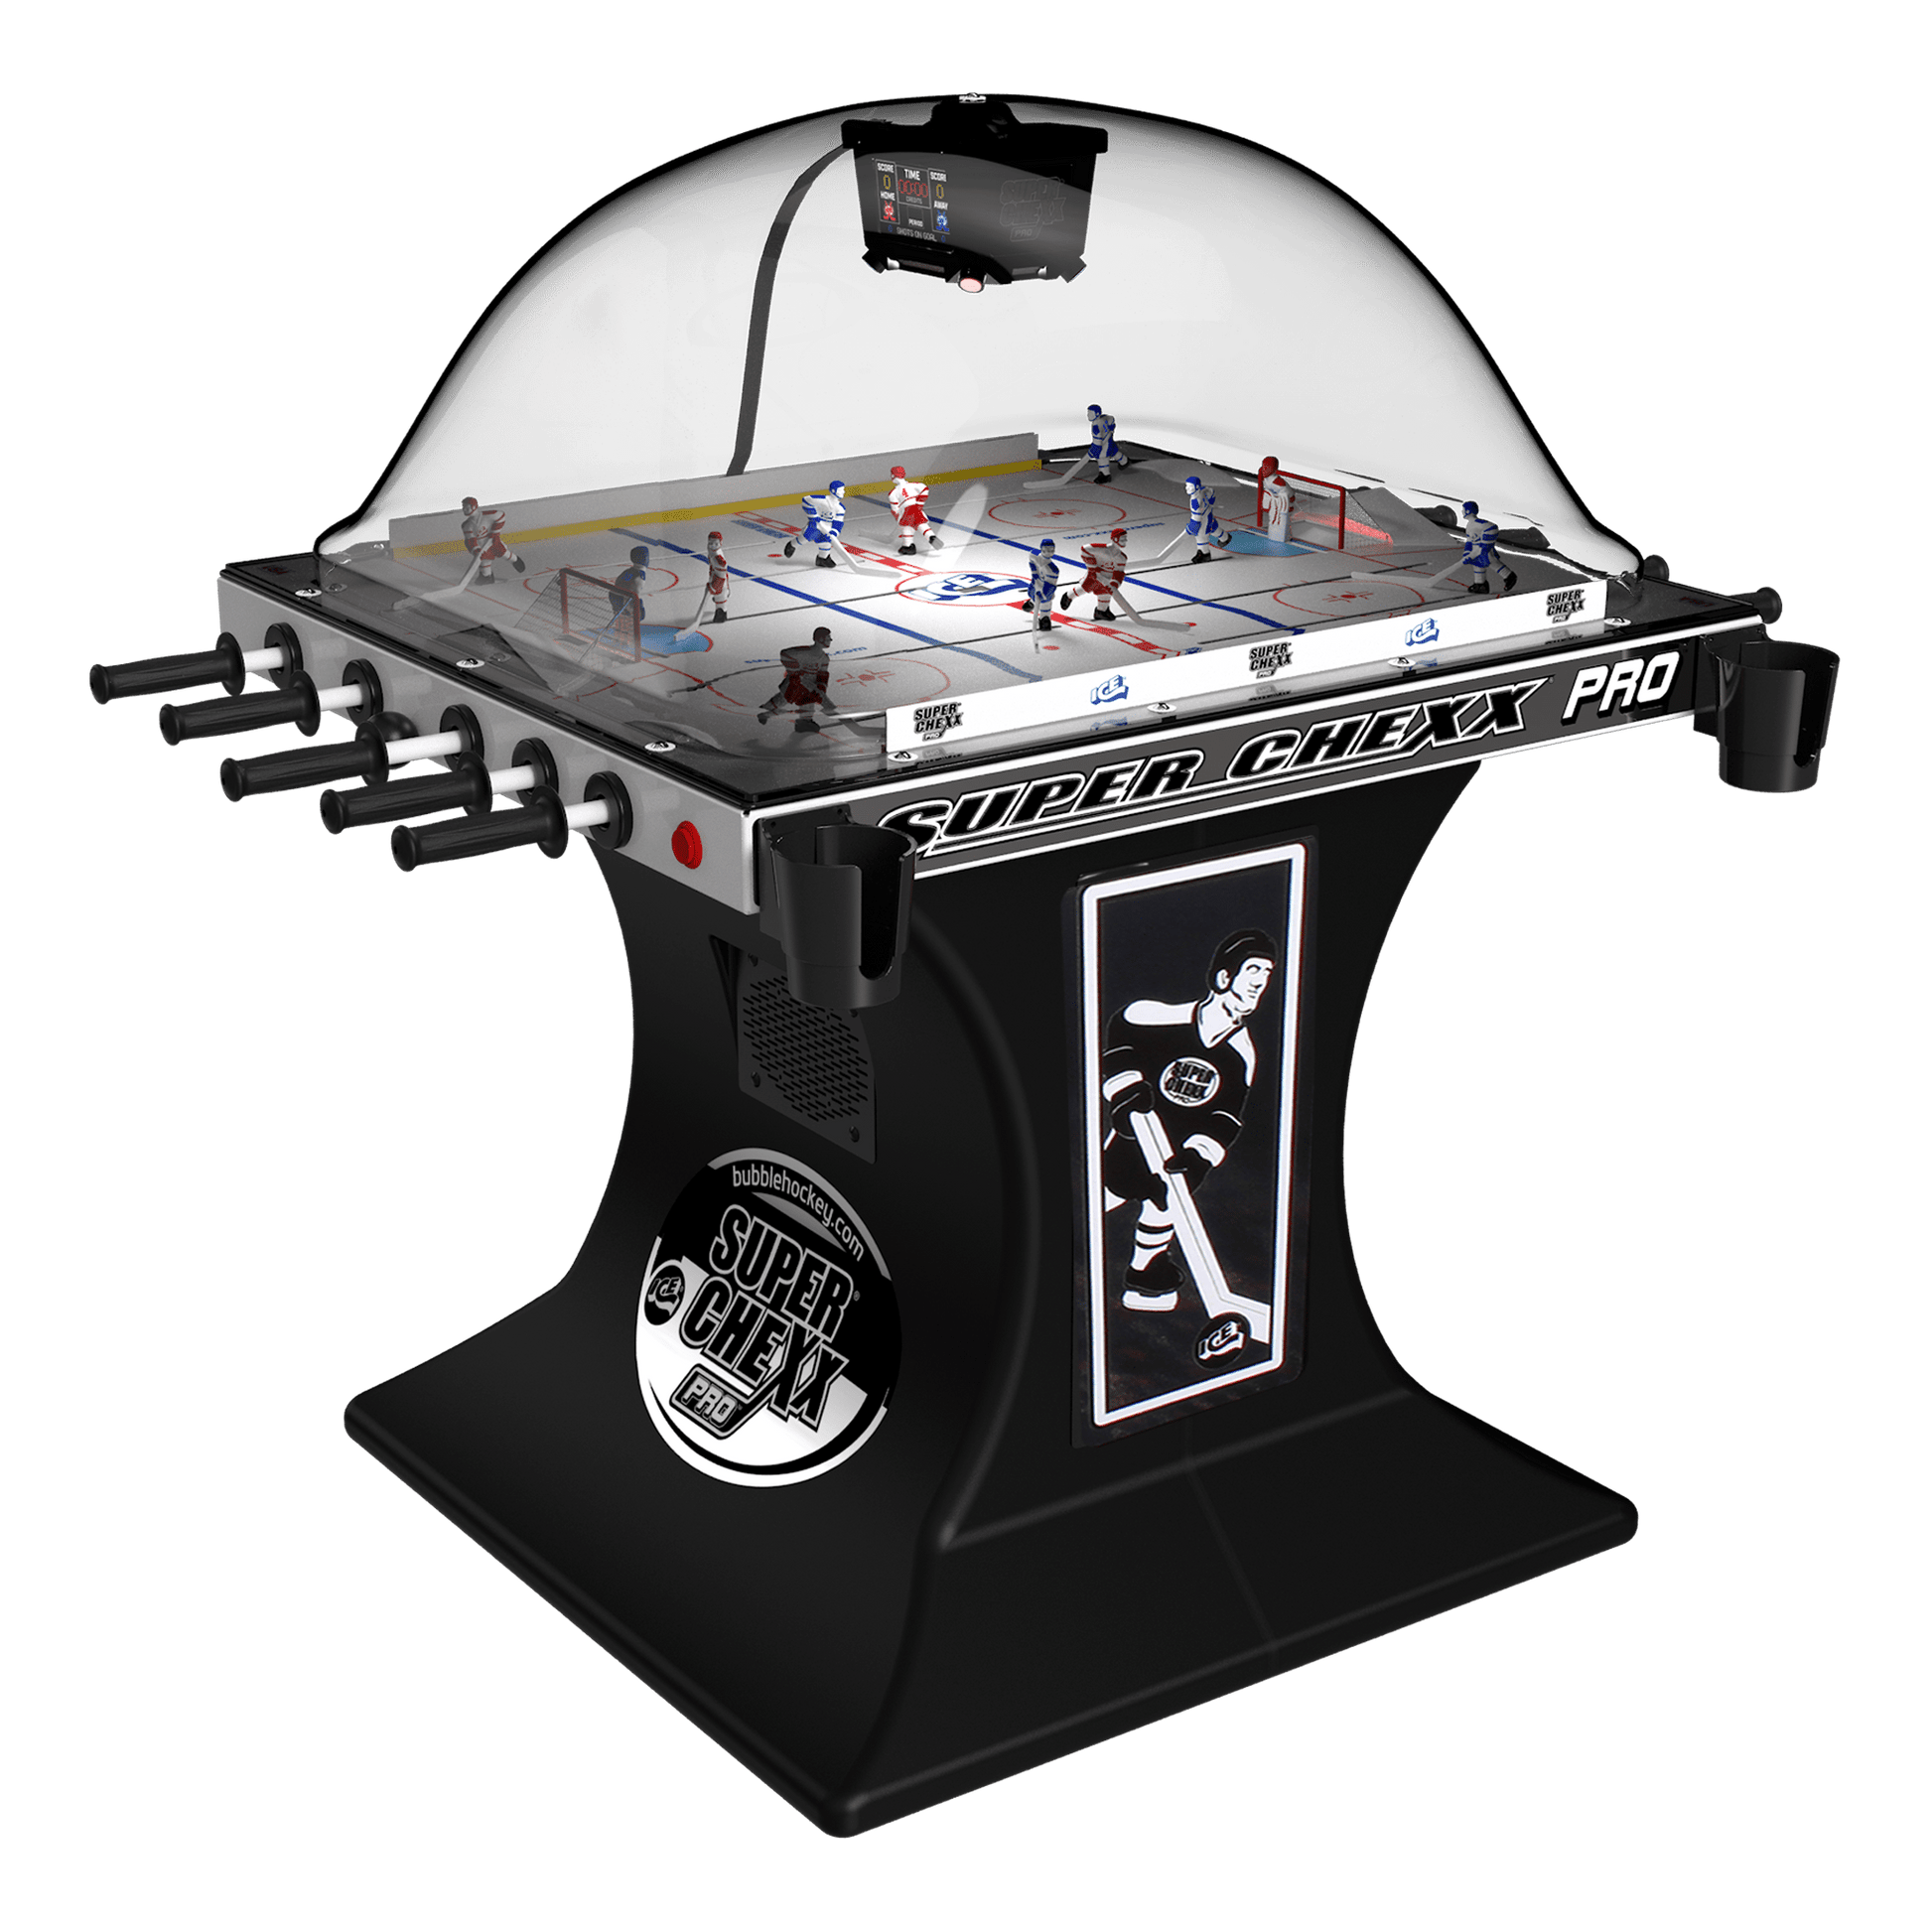 Super Chexx PRO® Arcade Innovative Concepts in Entertainment   